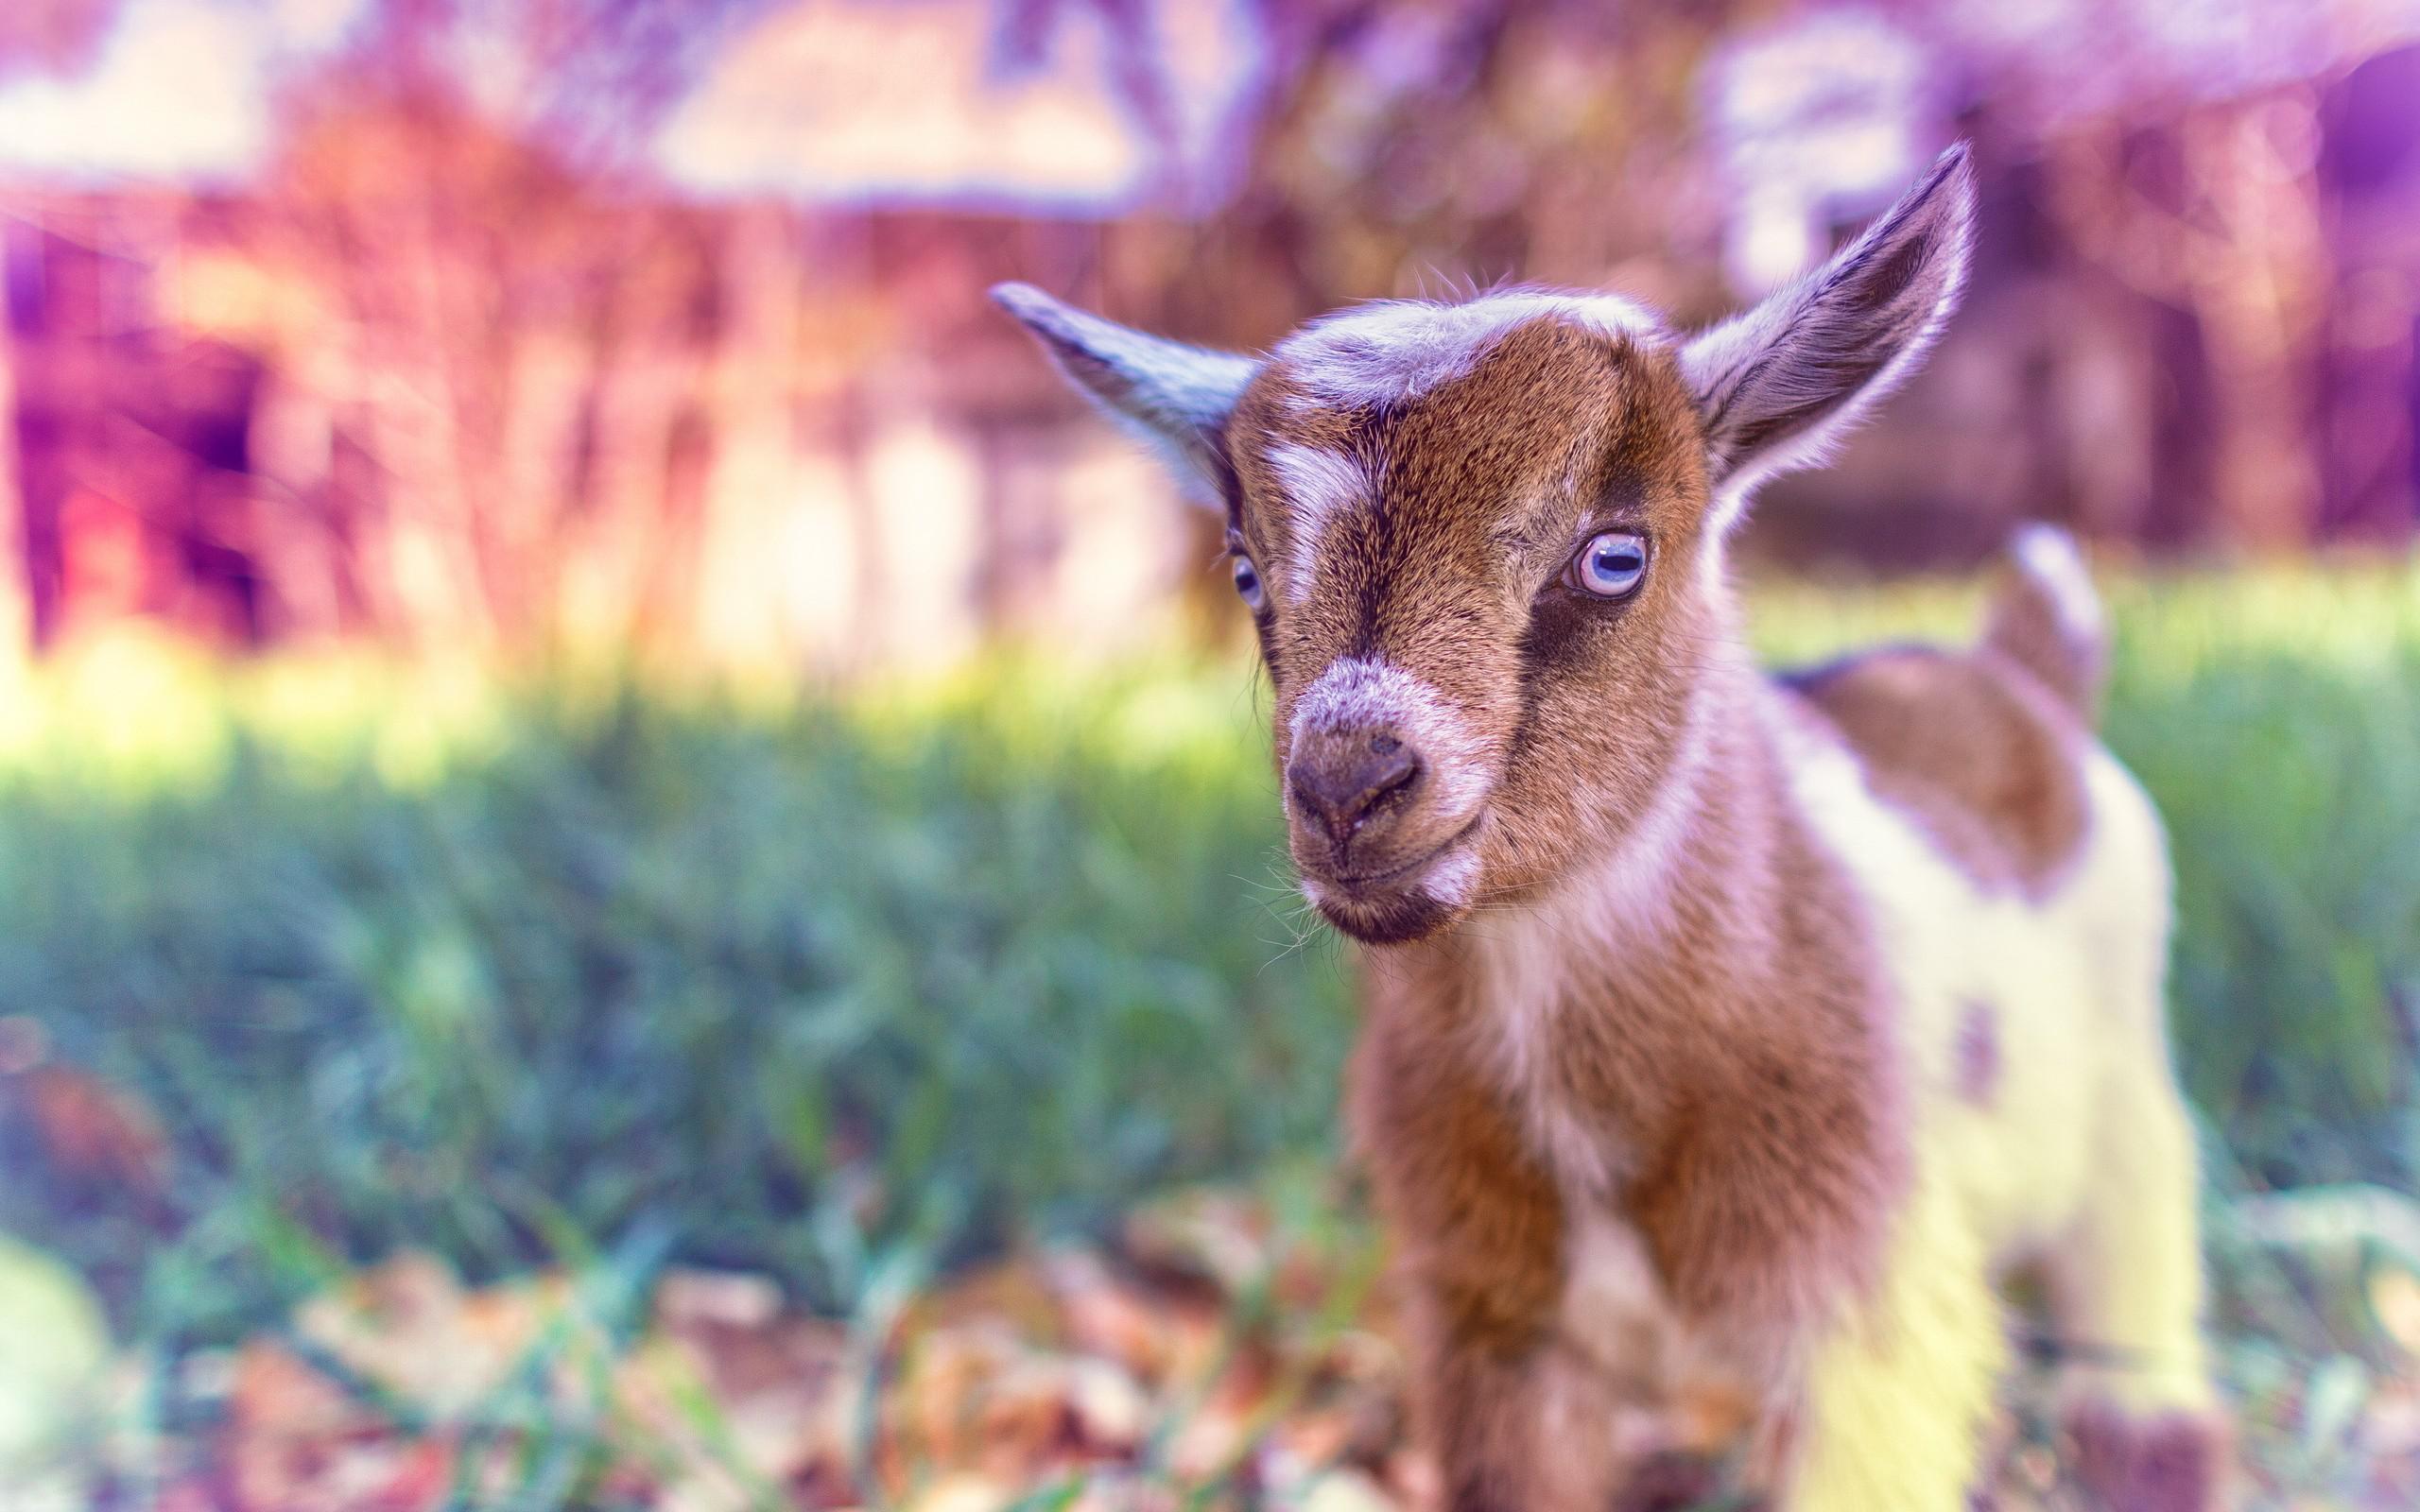 Cute Goat Baby HD desktop wallpaper, Widescreen, High Definition